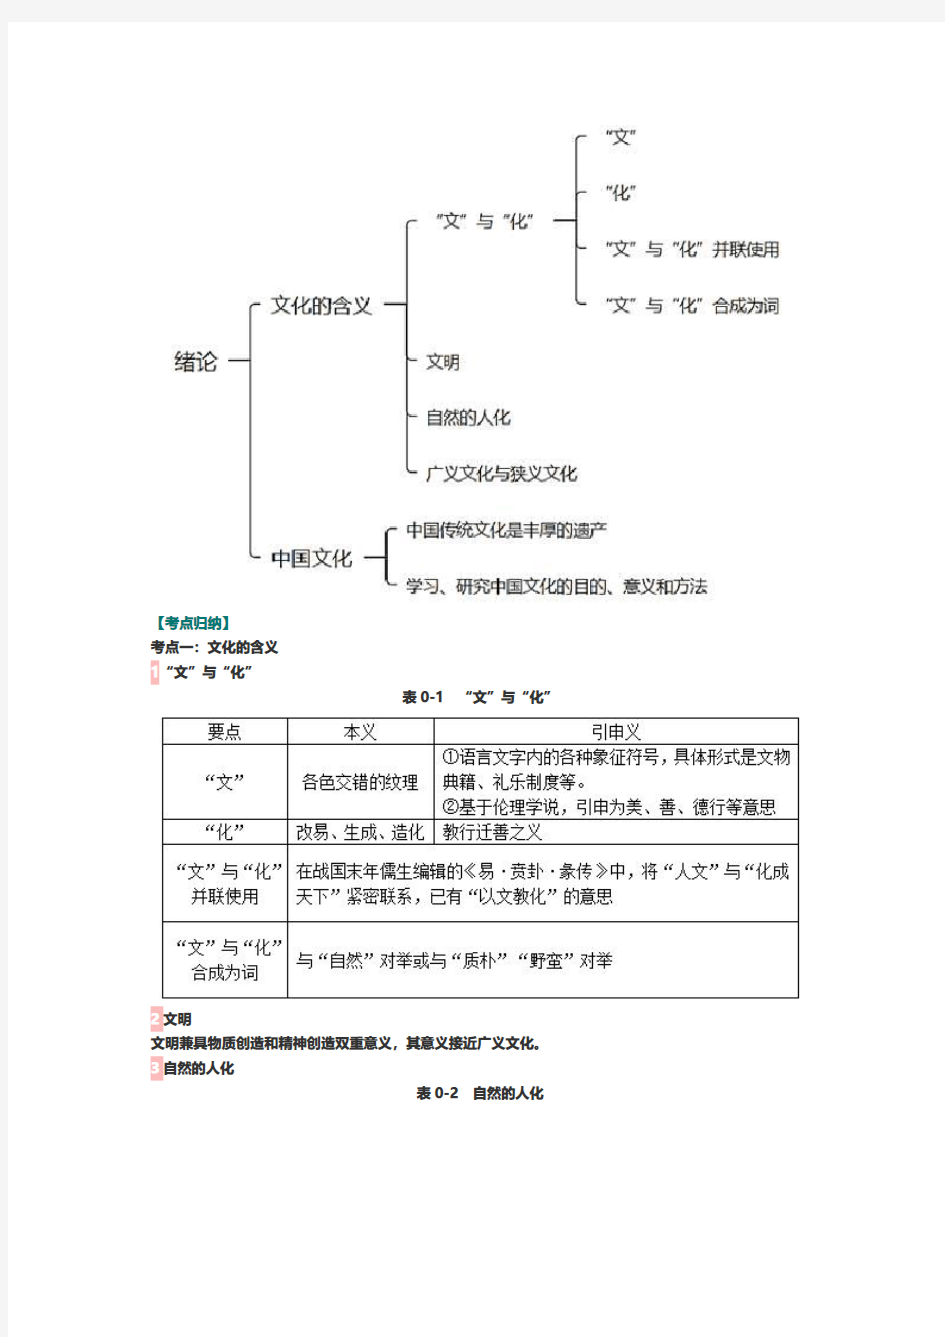 张岱年中国文化概论修订版笔记和课后习题详解资料